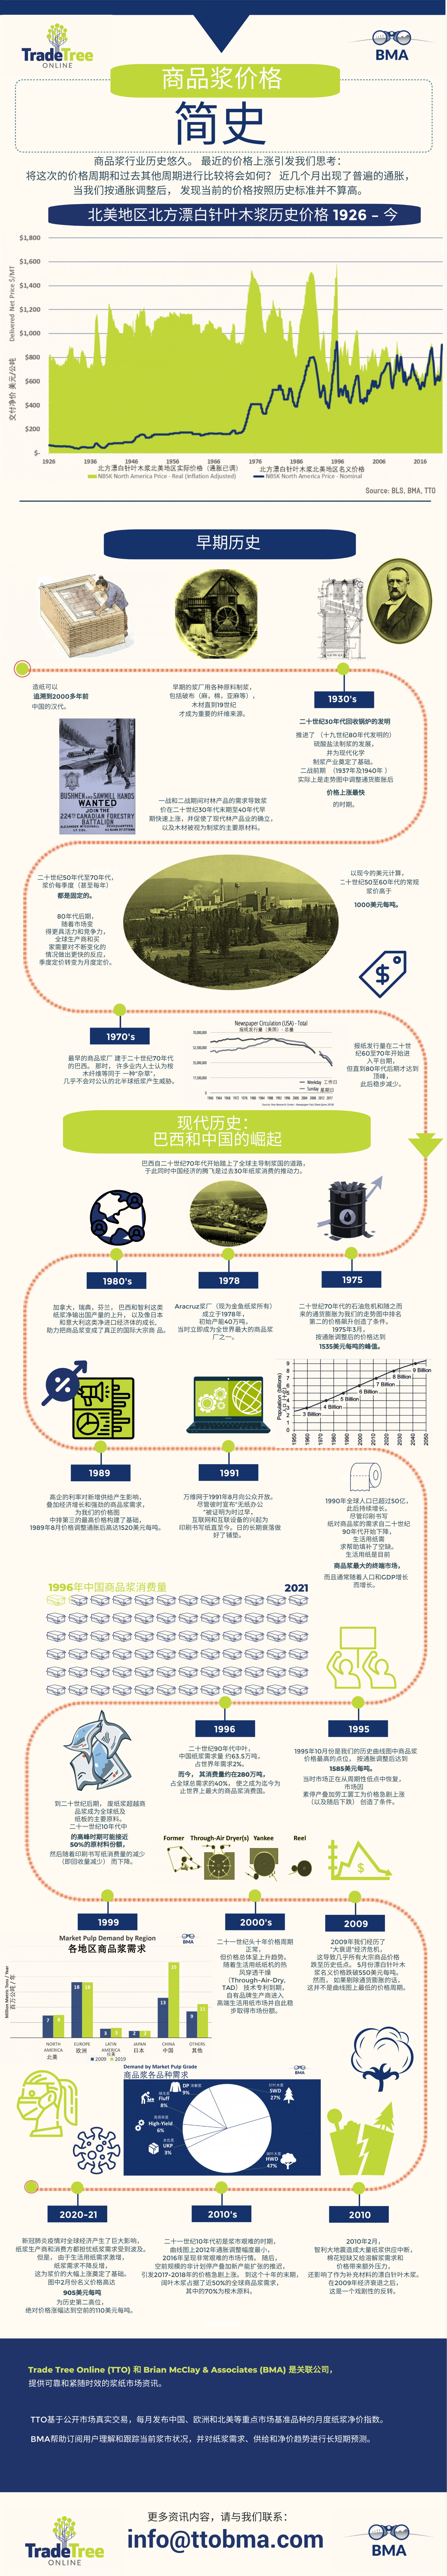 中文版HistoryofPulpChina (1).png